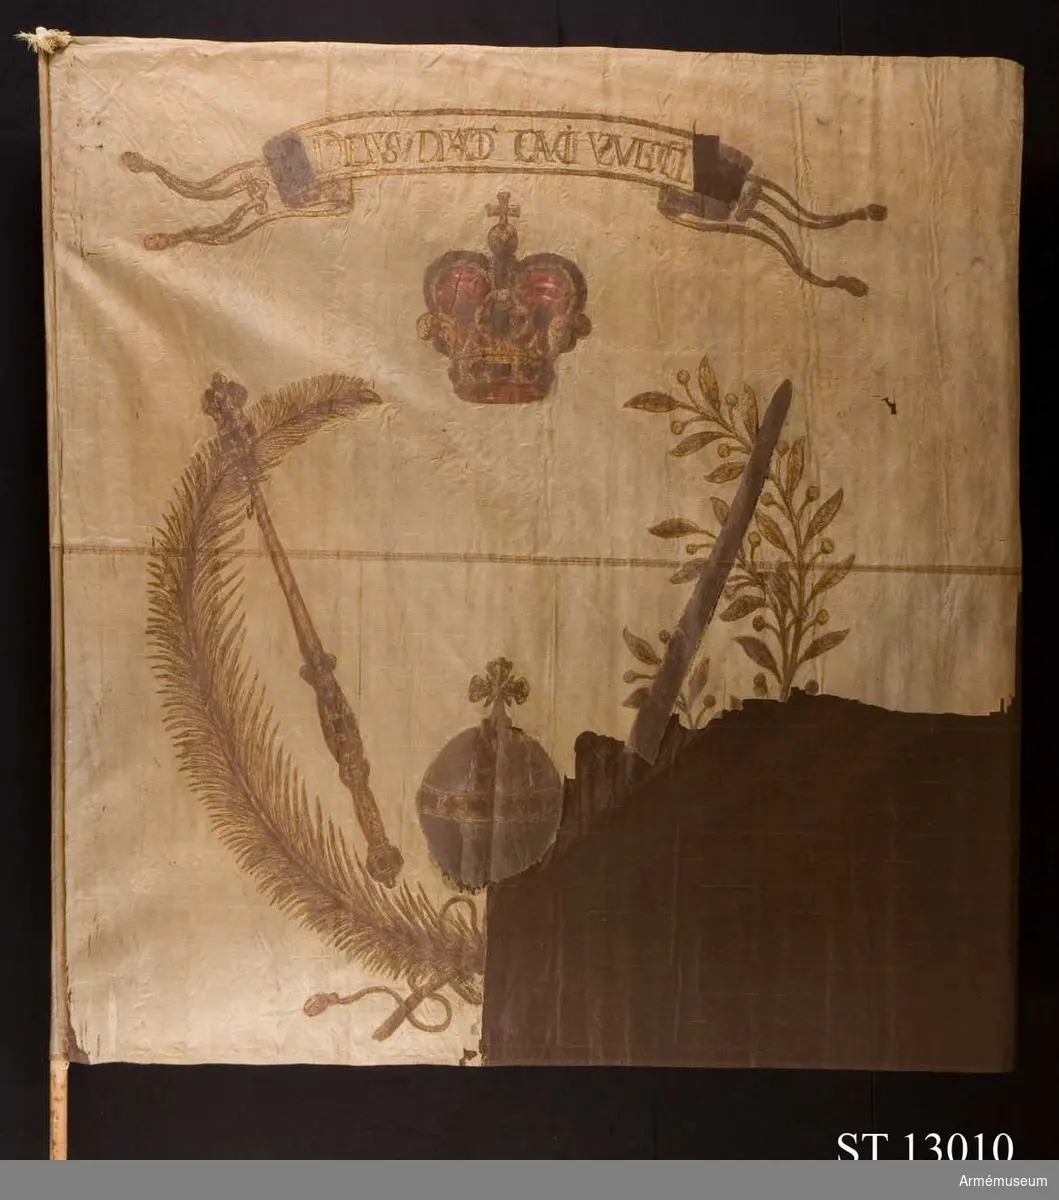 Dukens motiv består av en olivkrans och en palmkvist som är sammanbundna i nederkant. Mellan dessa står kungliga insignia: svärd, spira, riksäpple och krona. Detta motiv återfinns också på det dalermynt som präglades i Torún på 1632. Överst ett språkband.